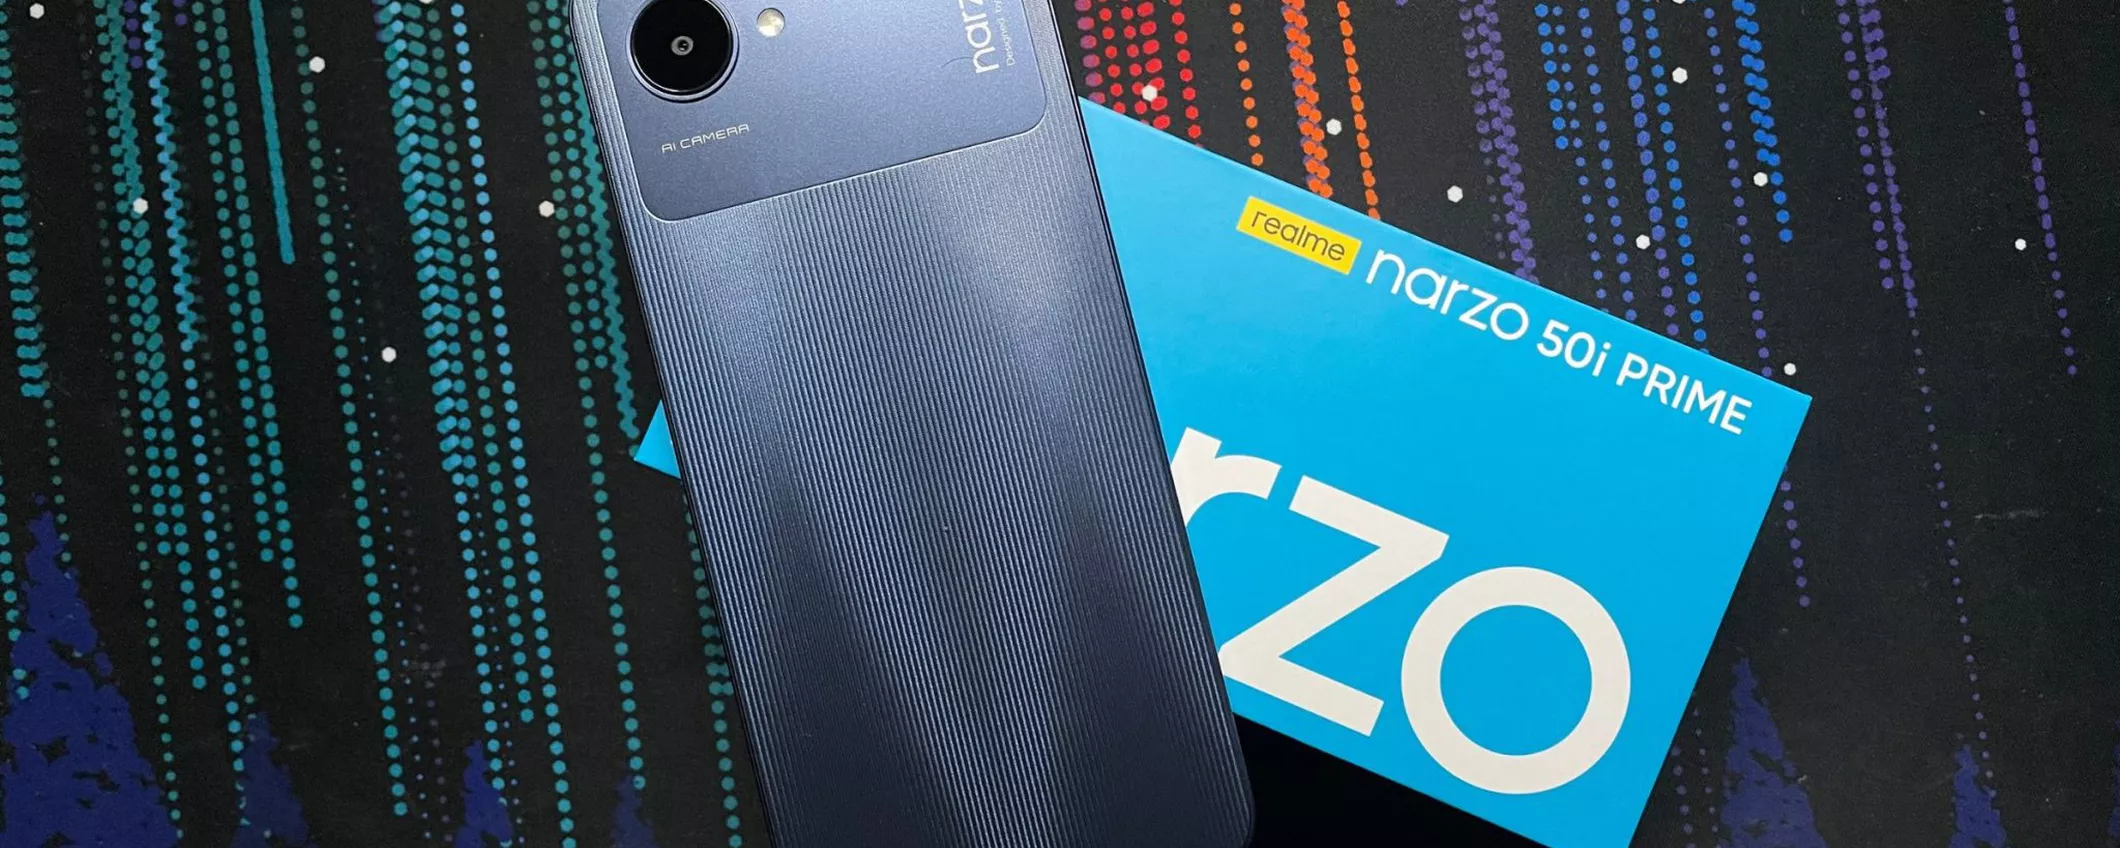 Realme Narzo 50i Prime, è lui l'ENTRY LEVEL Android da prendere sotto i 100€